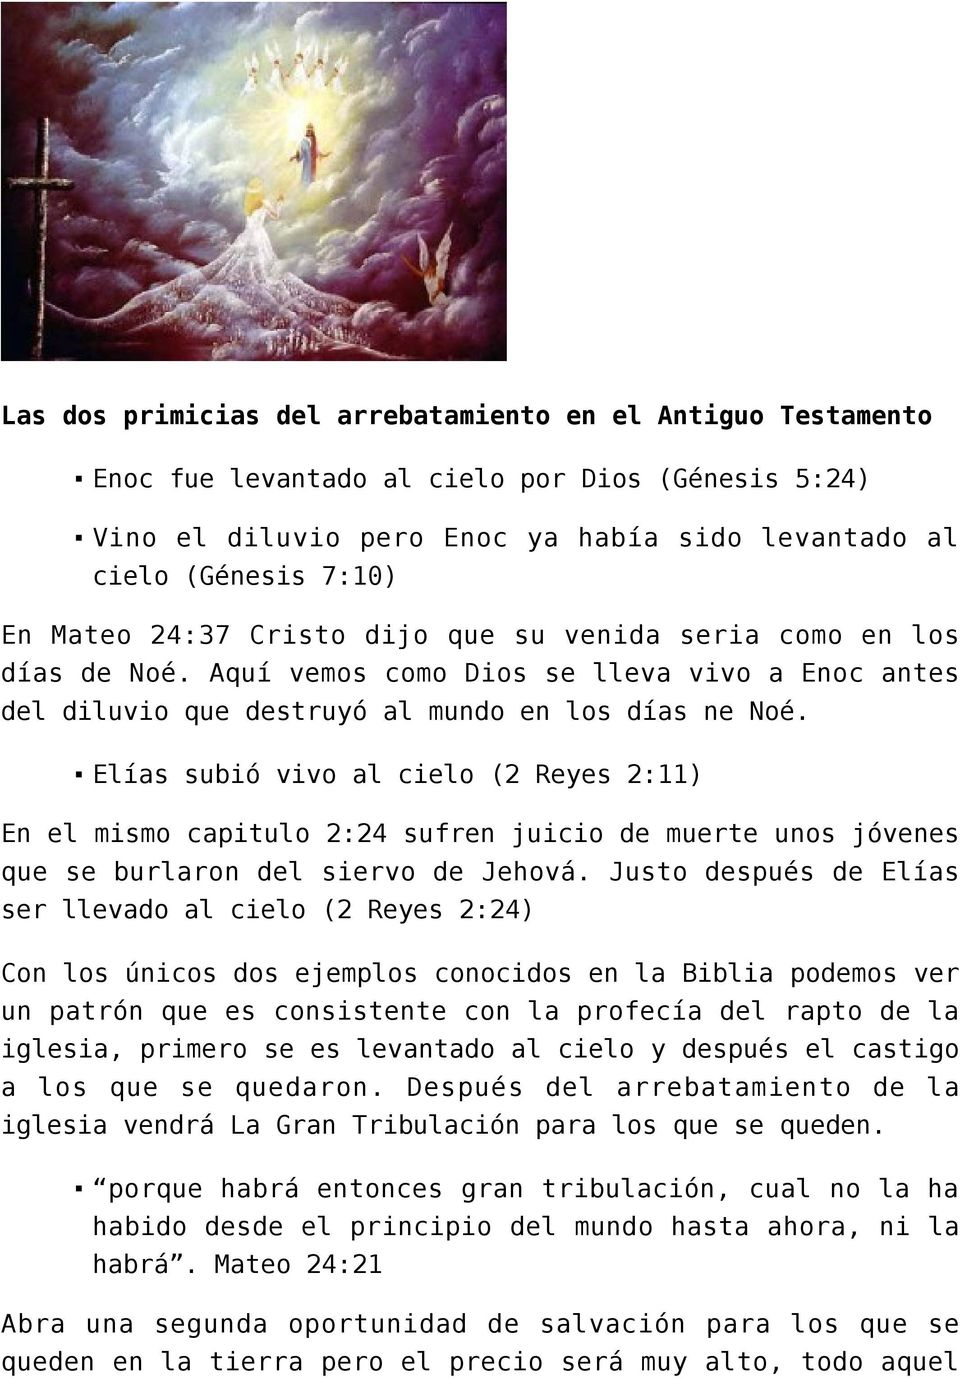 El arrebatamiento de la Iglesia - PDF Free Download